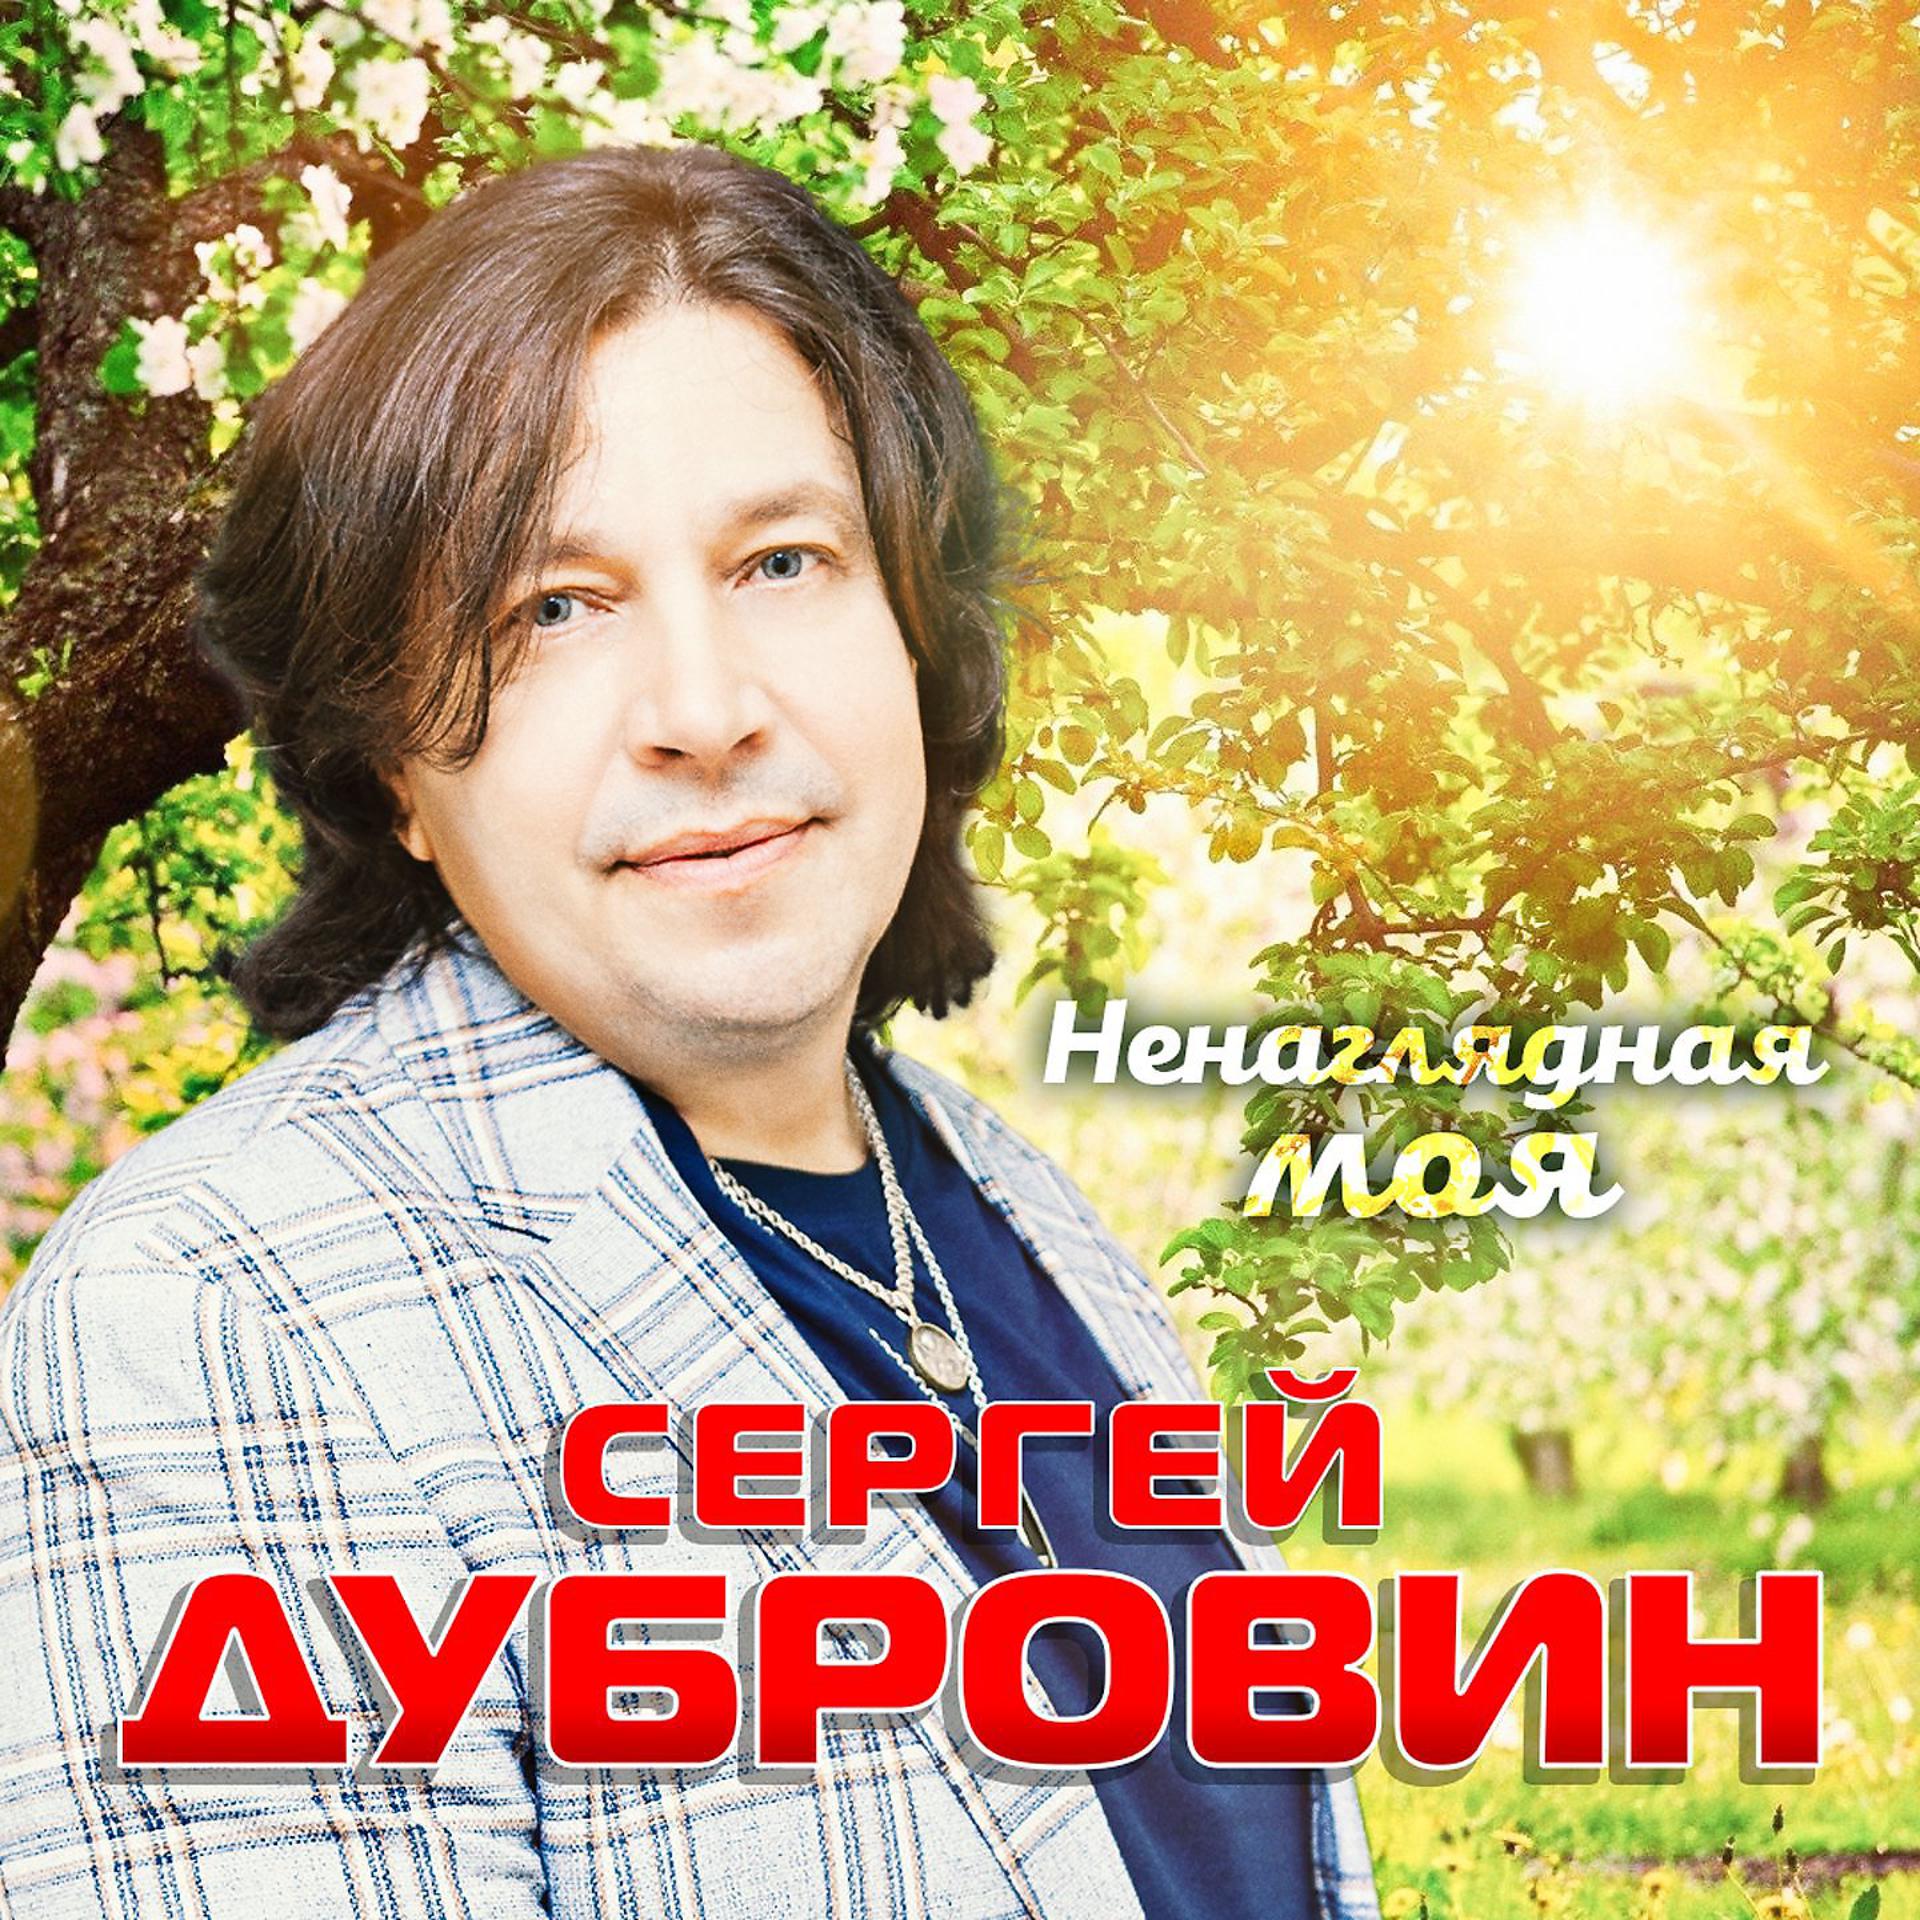 Постер к треку Сергей Дубровин - Ненаглядная моя